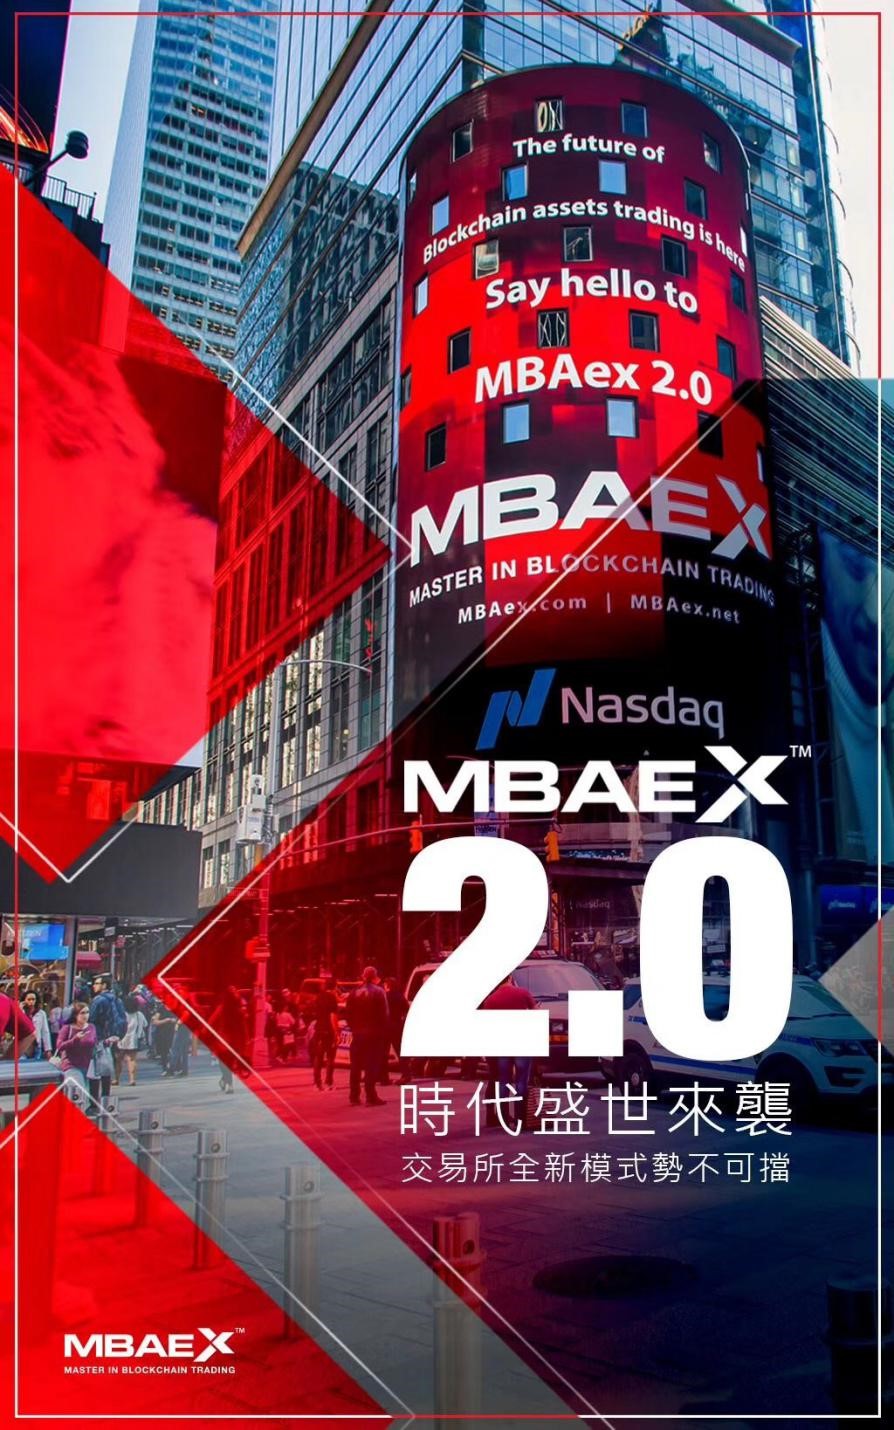 MBAex 2.0 ELITE BATTLE TRADING COMPETITION MBAex 2.0 巅配图(1)